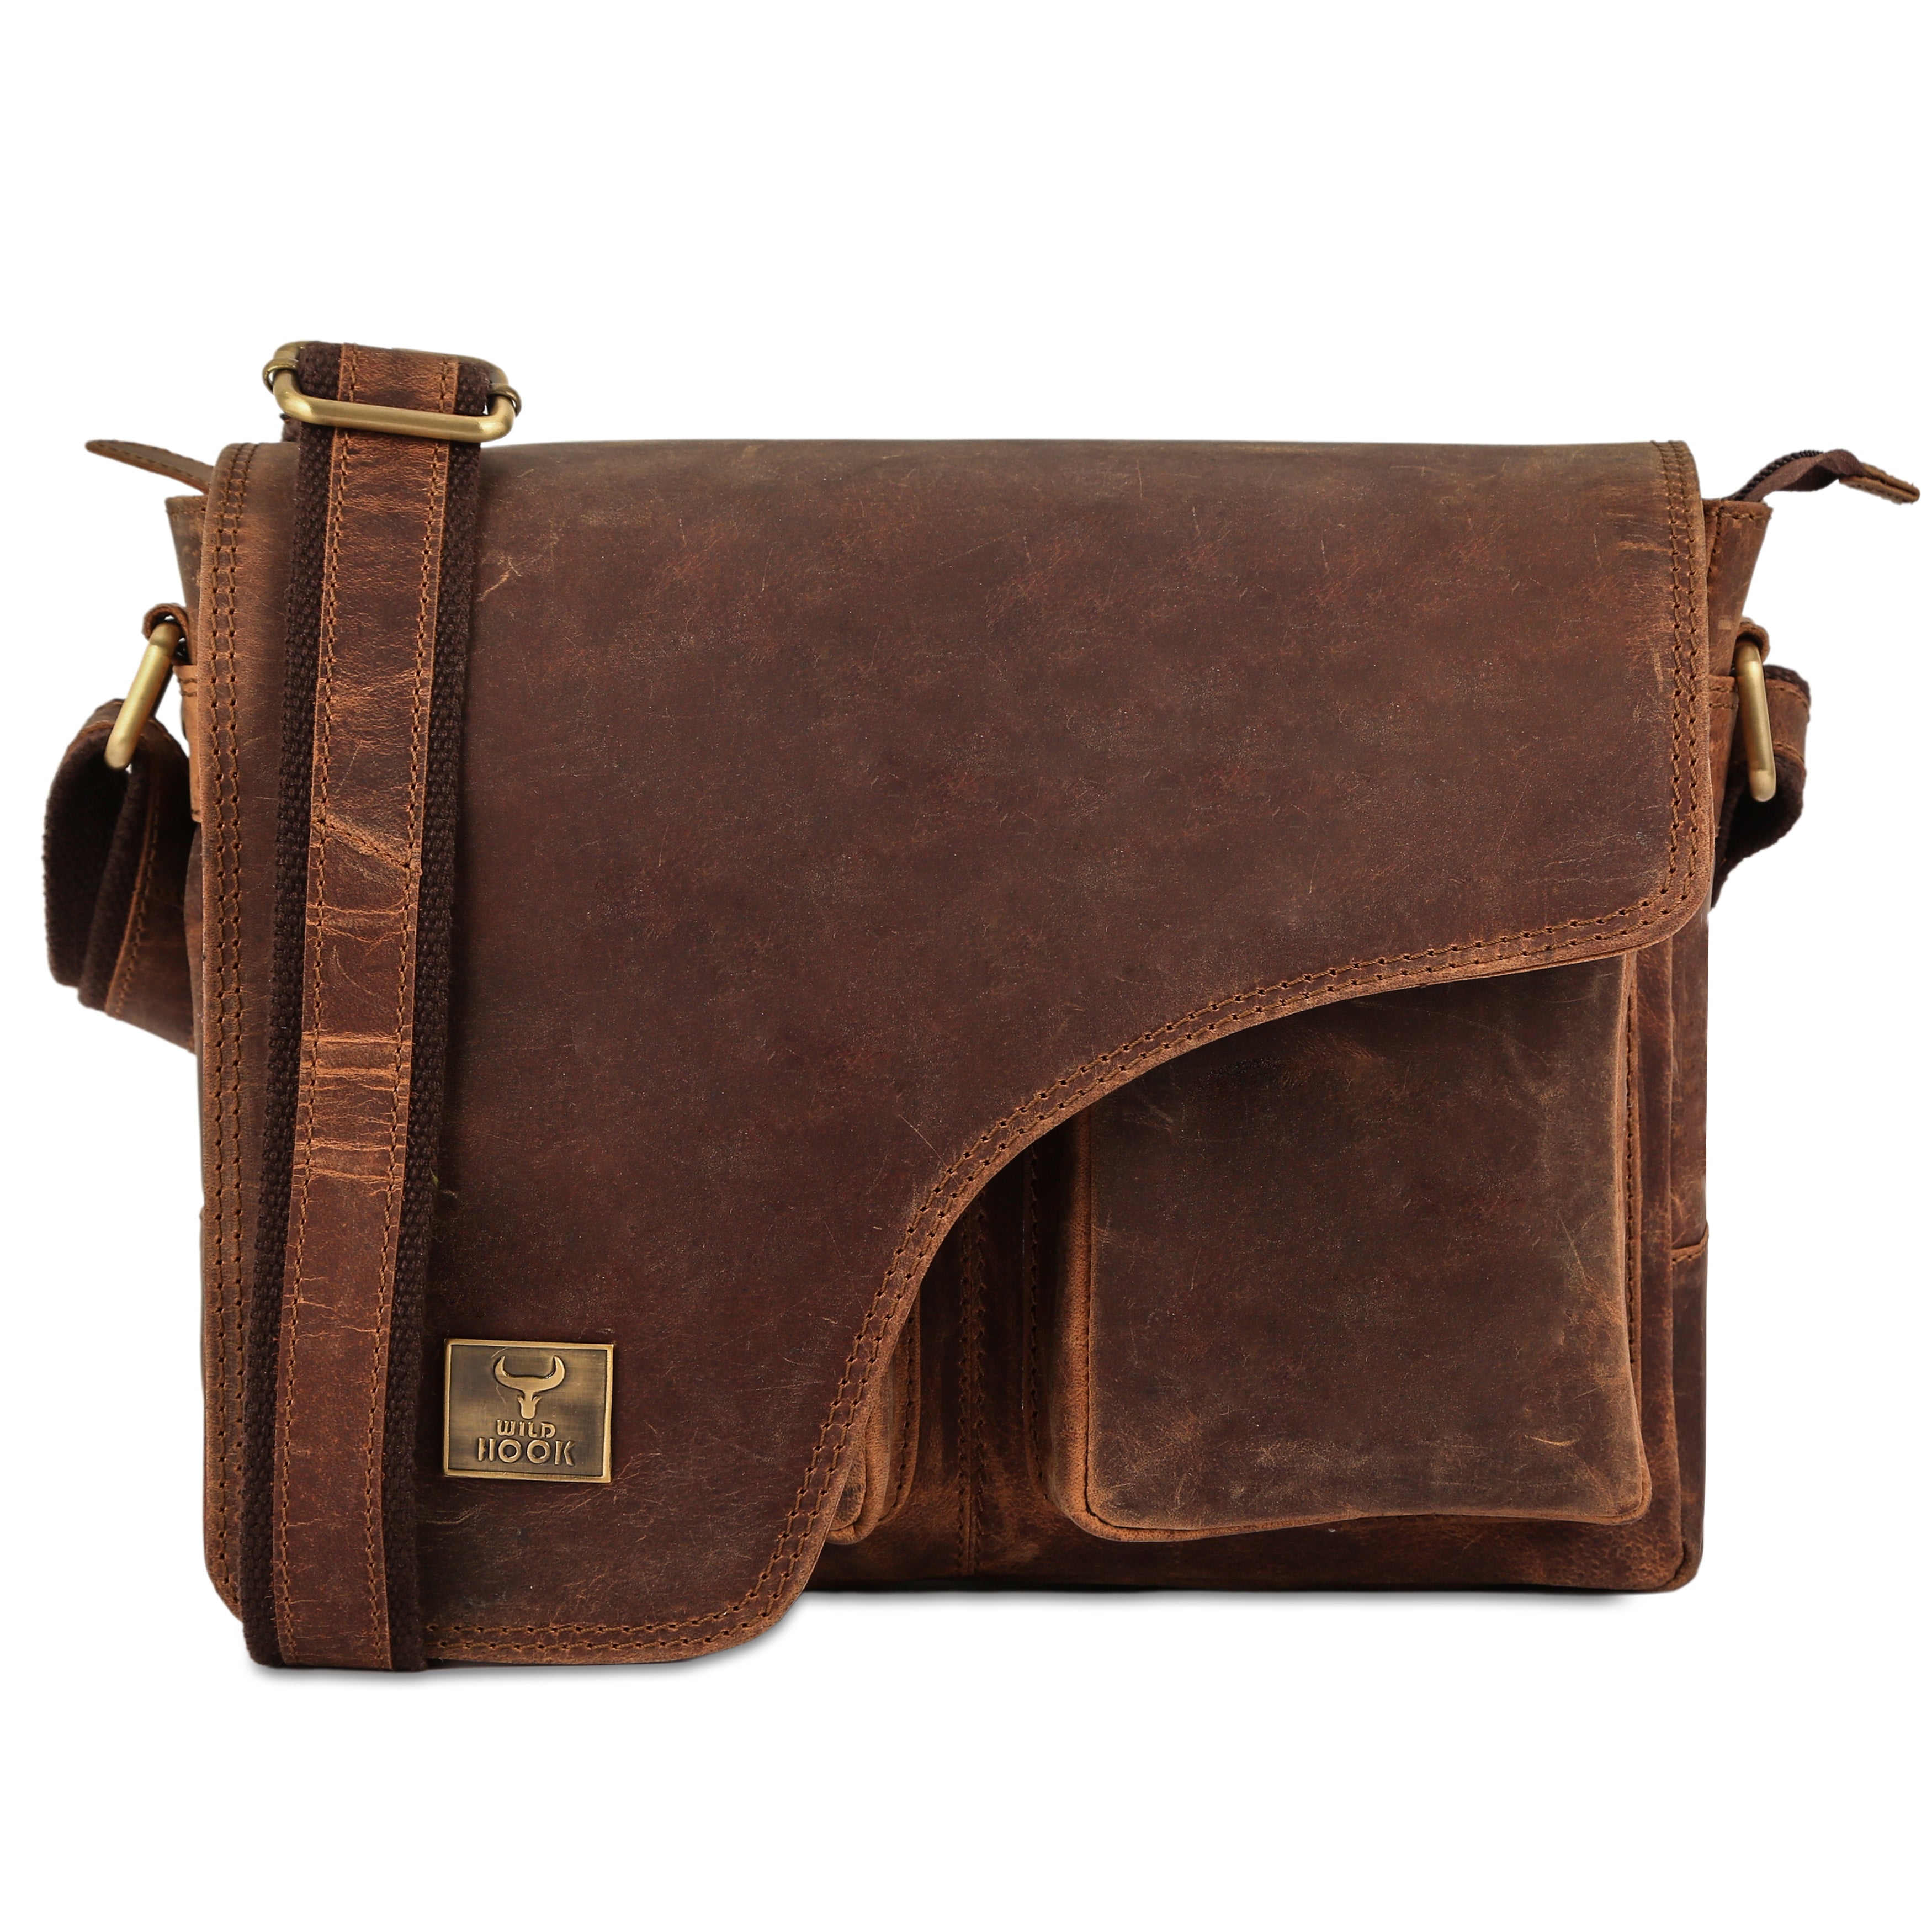 Leather Messenger Bag – Wild Hook